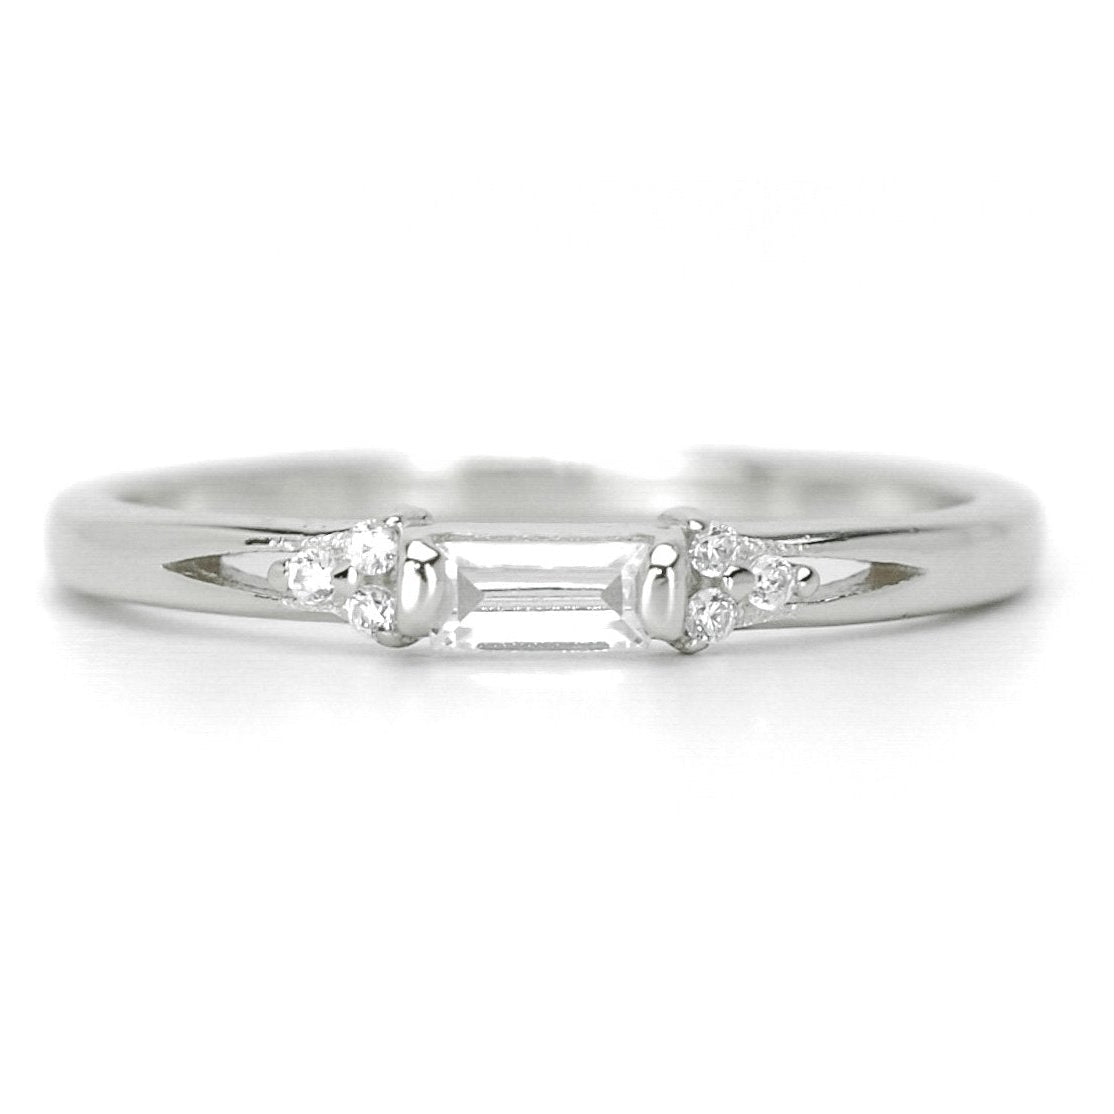 baquette ring, gouden ring voor dames, baquette ring rosegoud, ring met stenen zilver, verlovingsring voor dames, subtiele ring met stenen